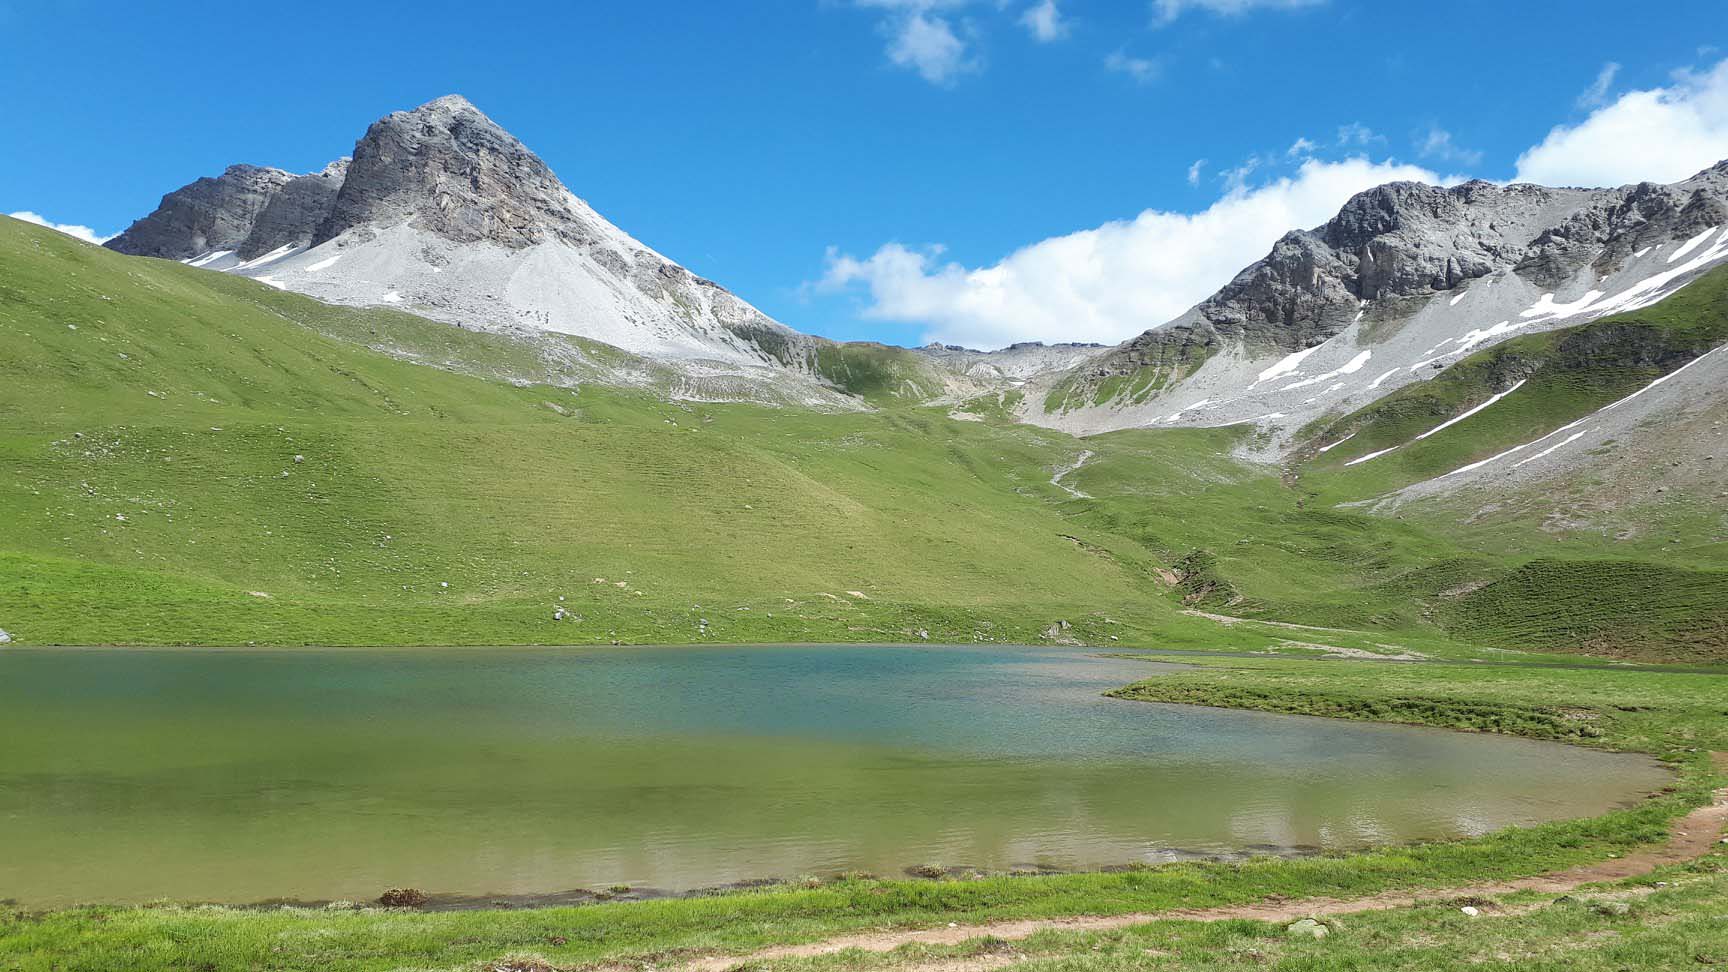 A mountain lake where we will swim